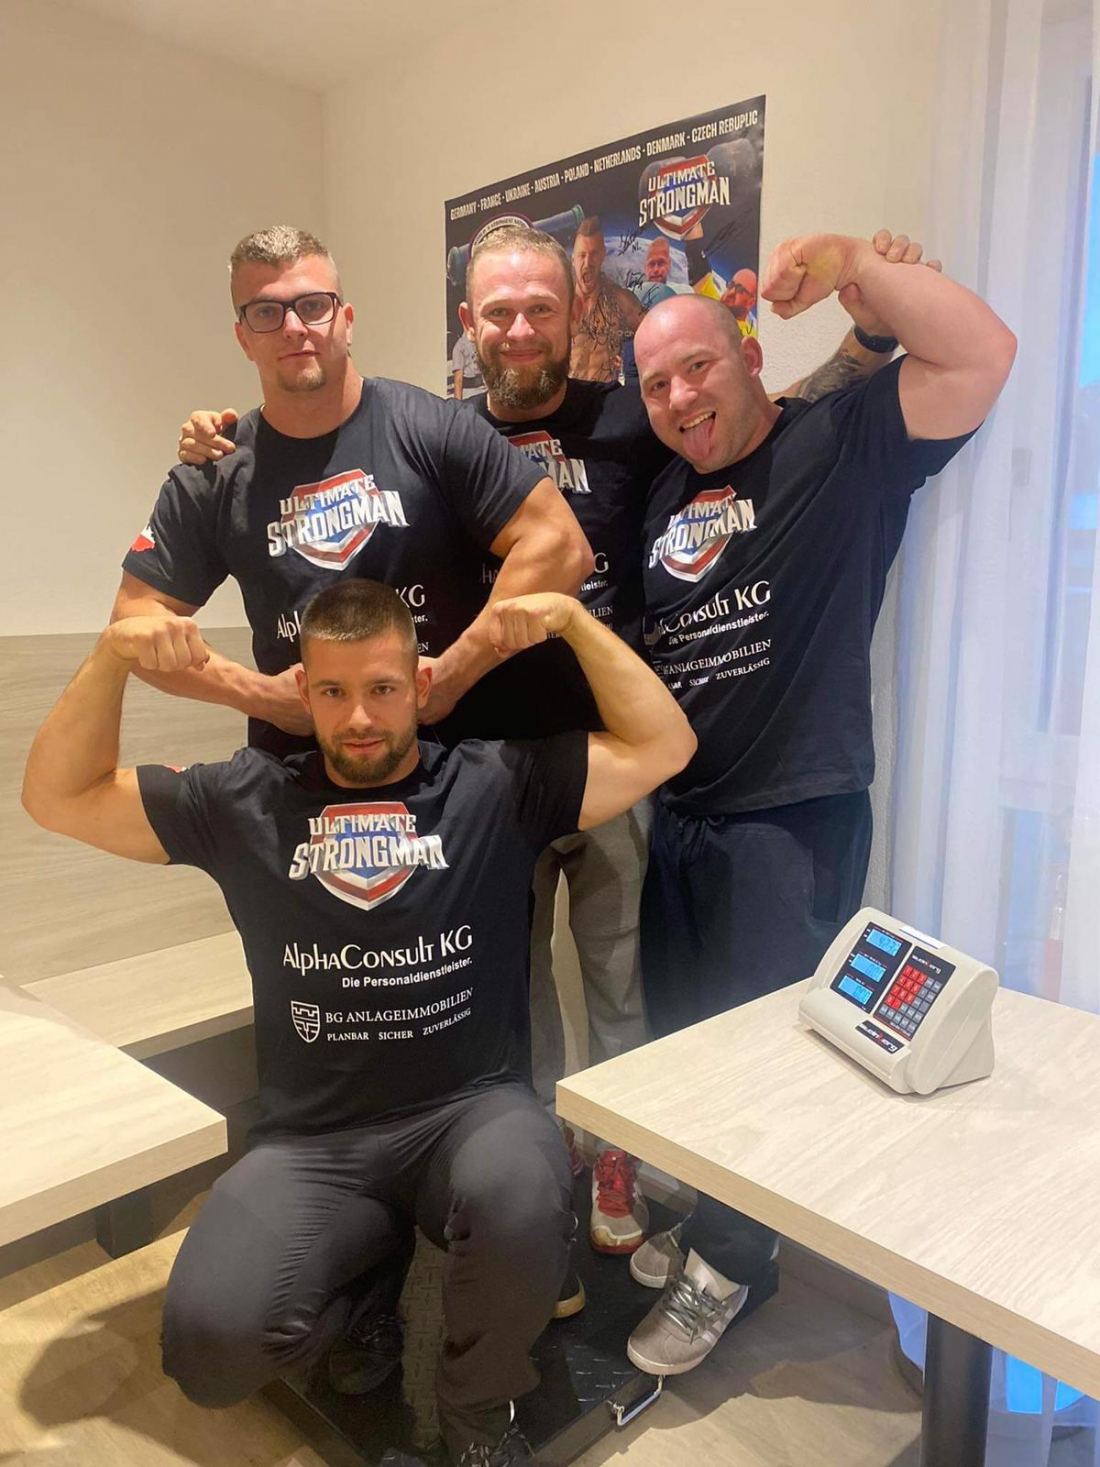 Československý tým zvítězil na soutěži World strongest nation u105kg!